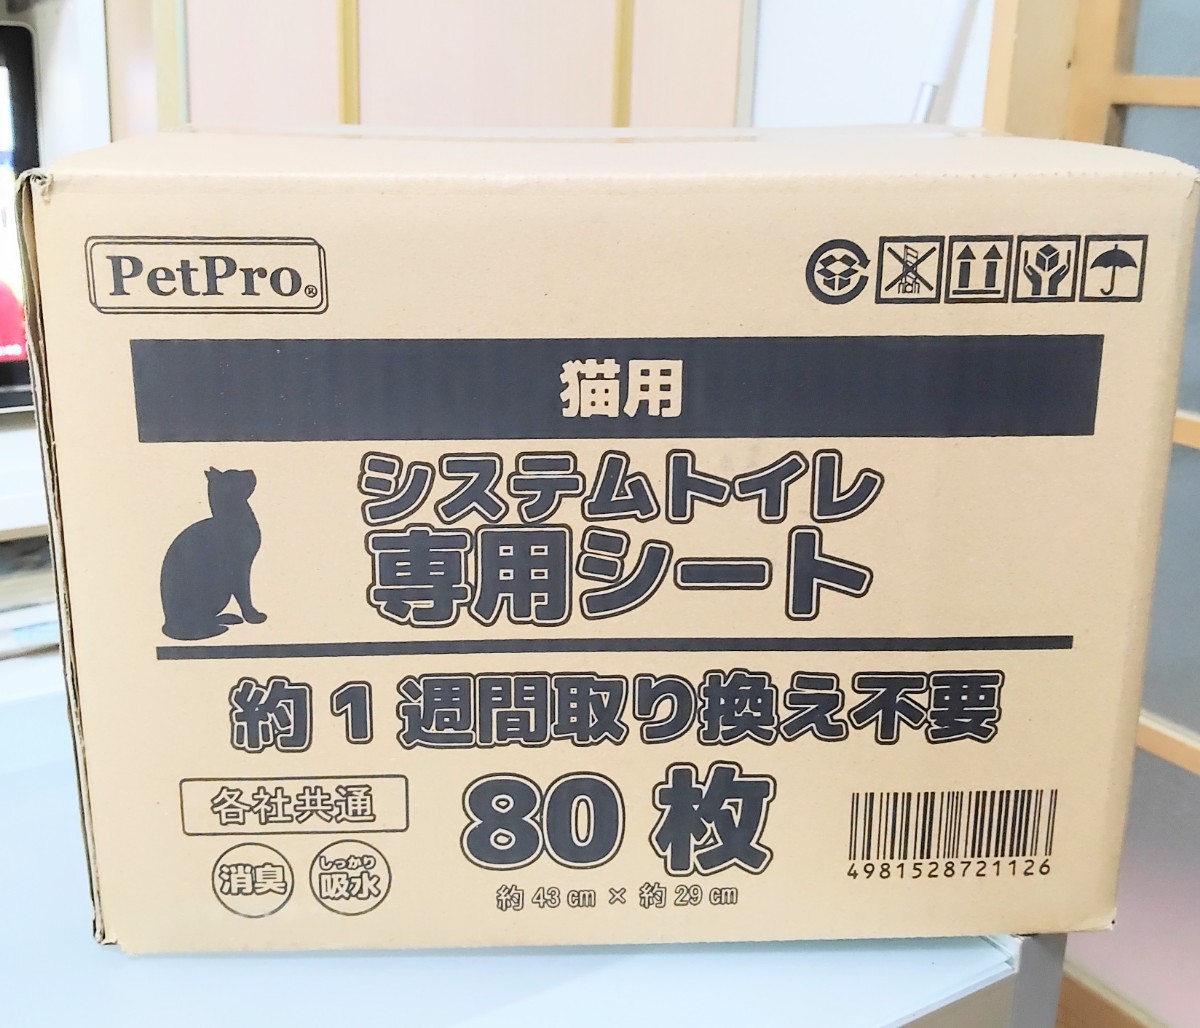  каждый фирма общий система туалет специальный дезодорация сиденье 80 листов входит ⑦126 домашнее животное Pro PetPro примерно 43cm× примерно 29cm 4981528721126